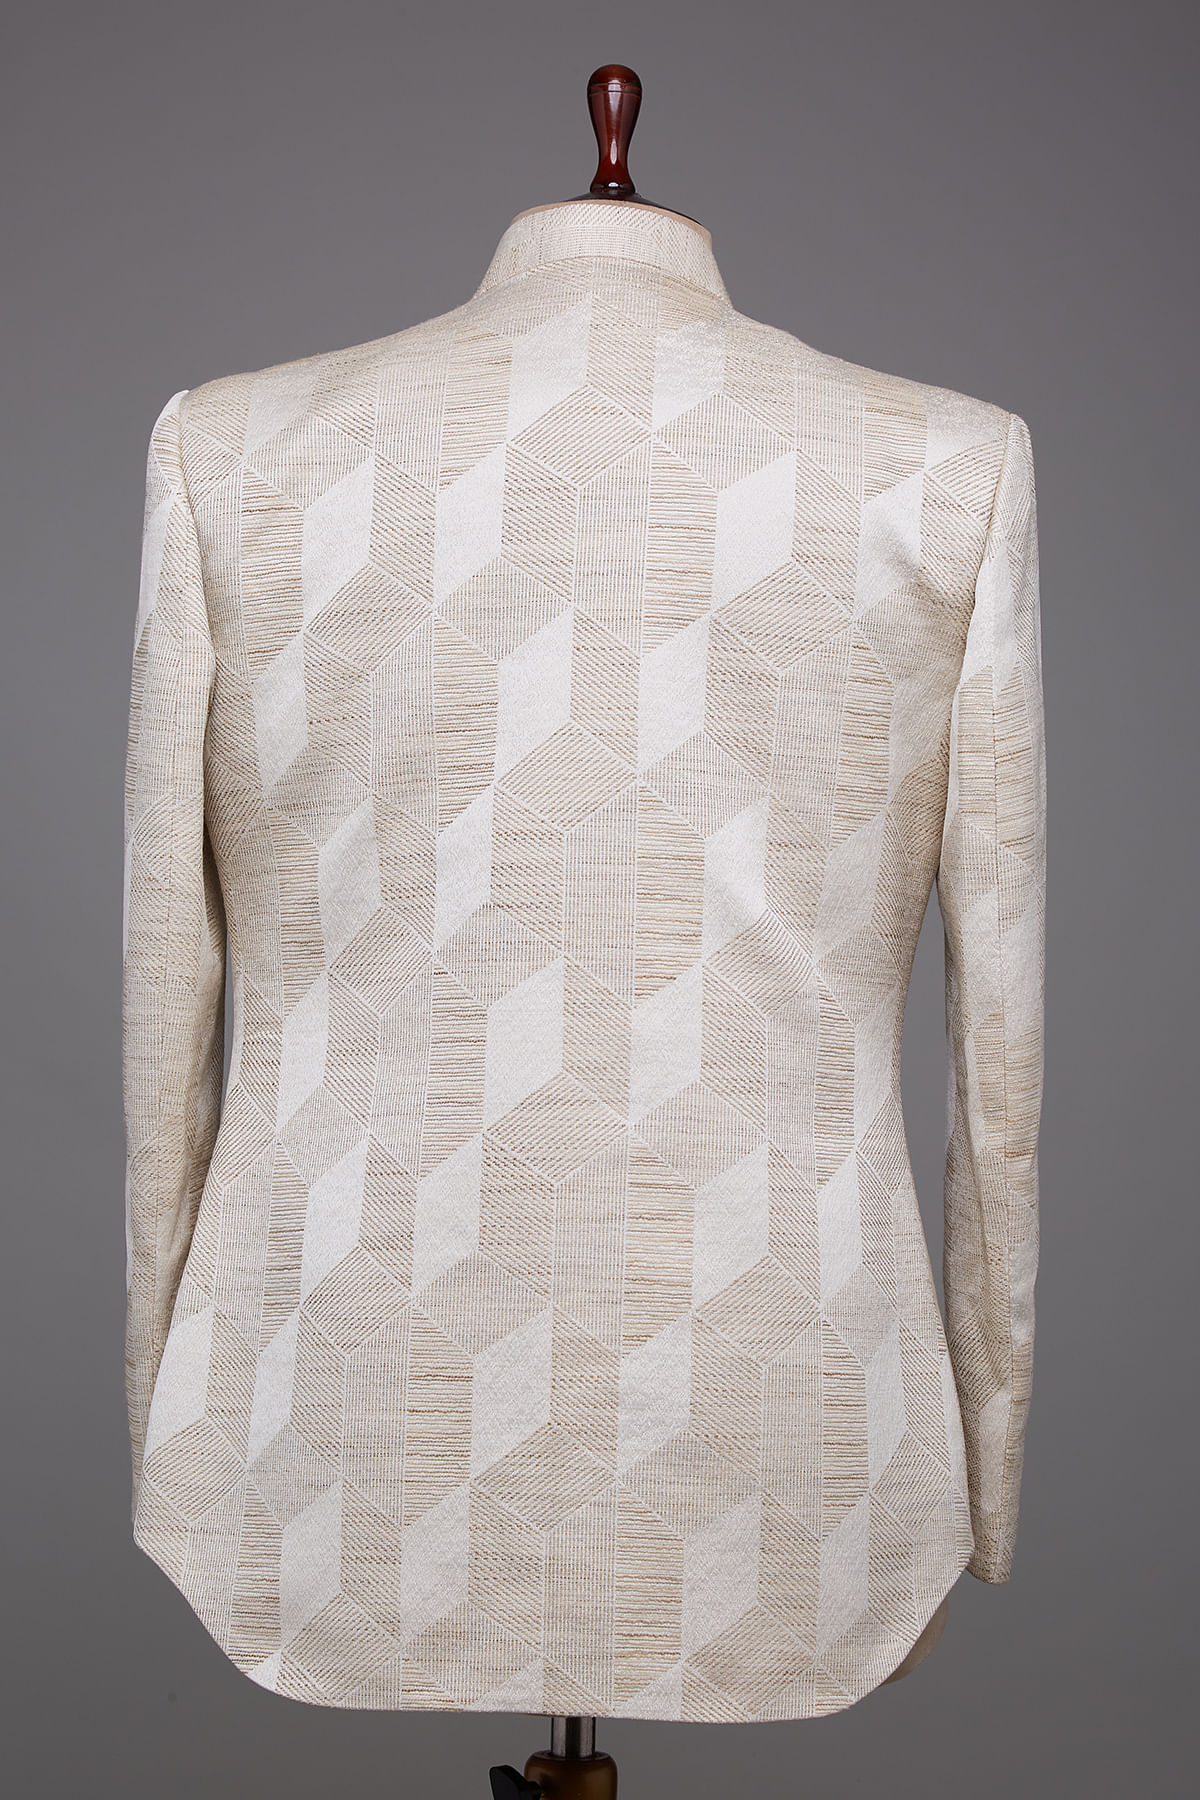 Buy Off White & Beige Woven Silk Jodhpuri Suit Online